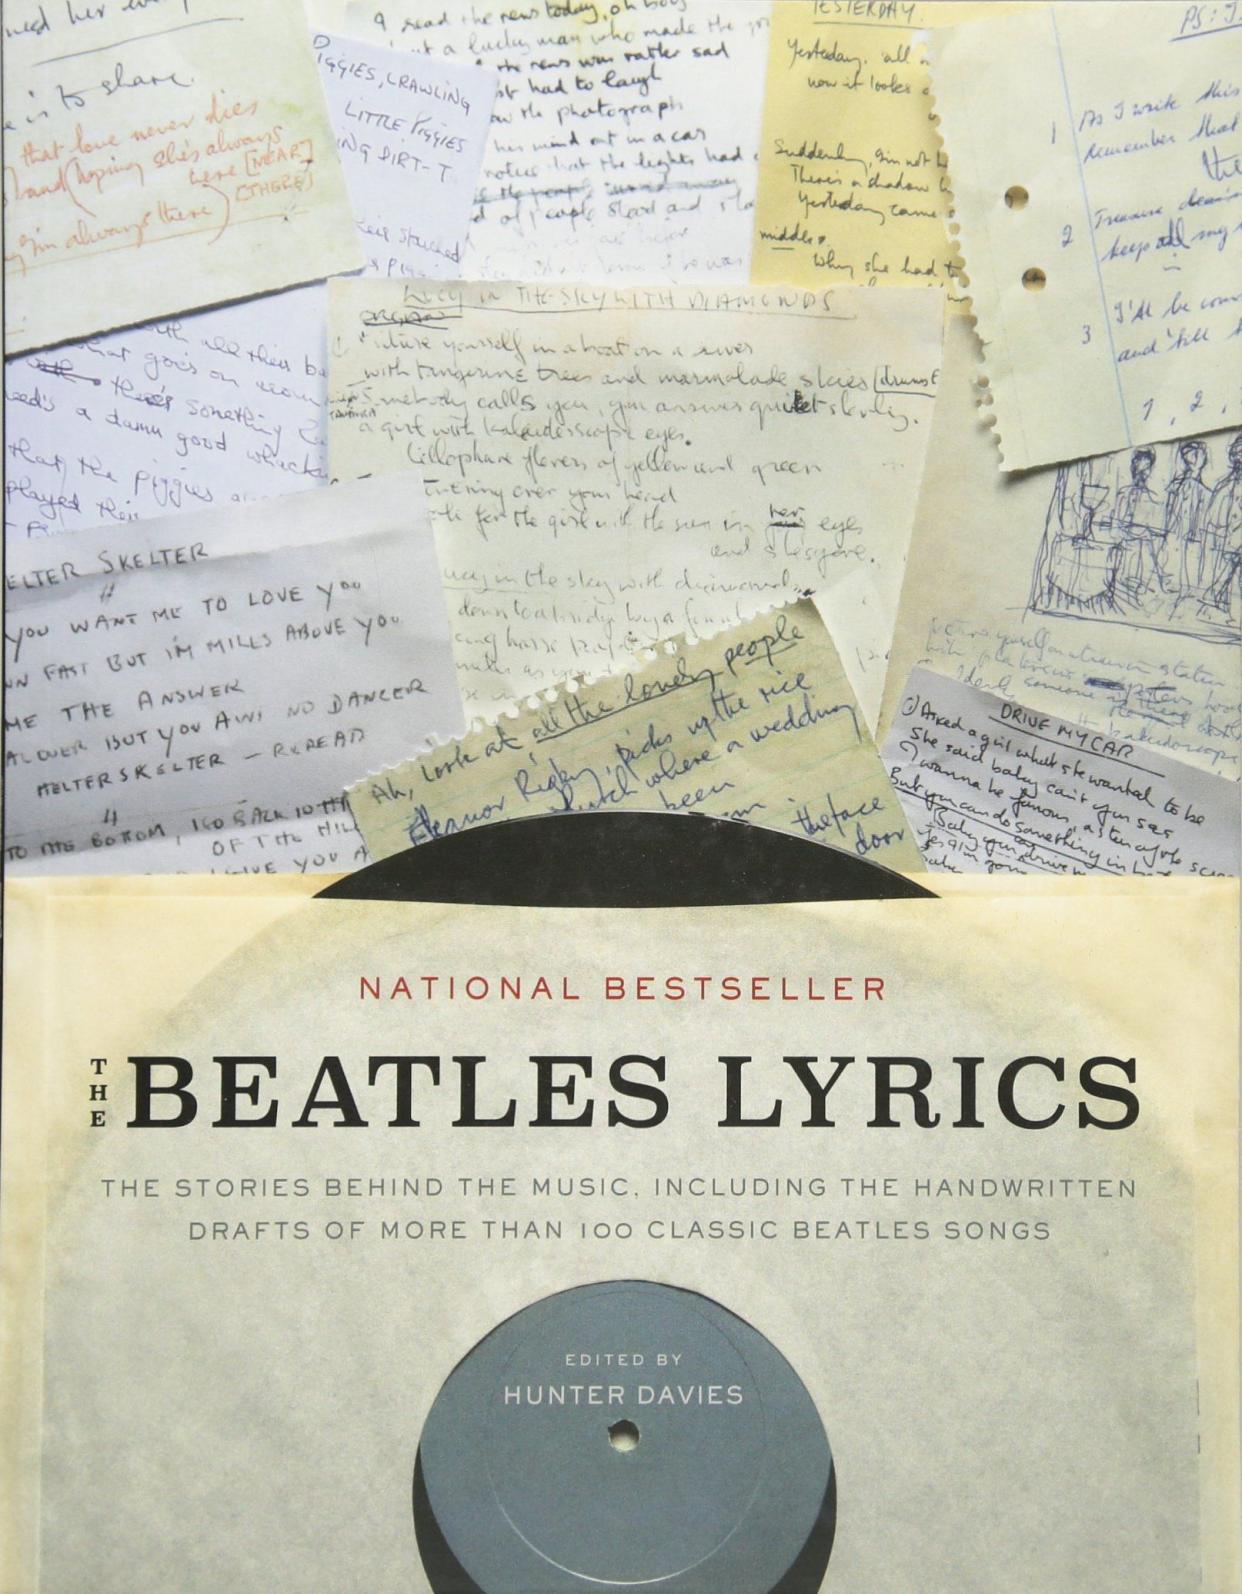 'The Beatles Lyrics'